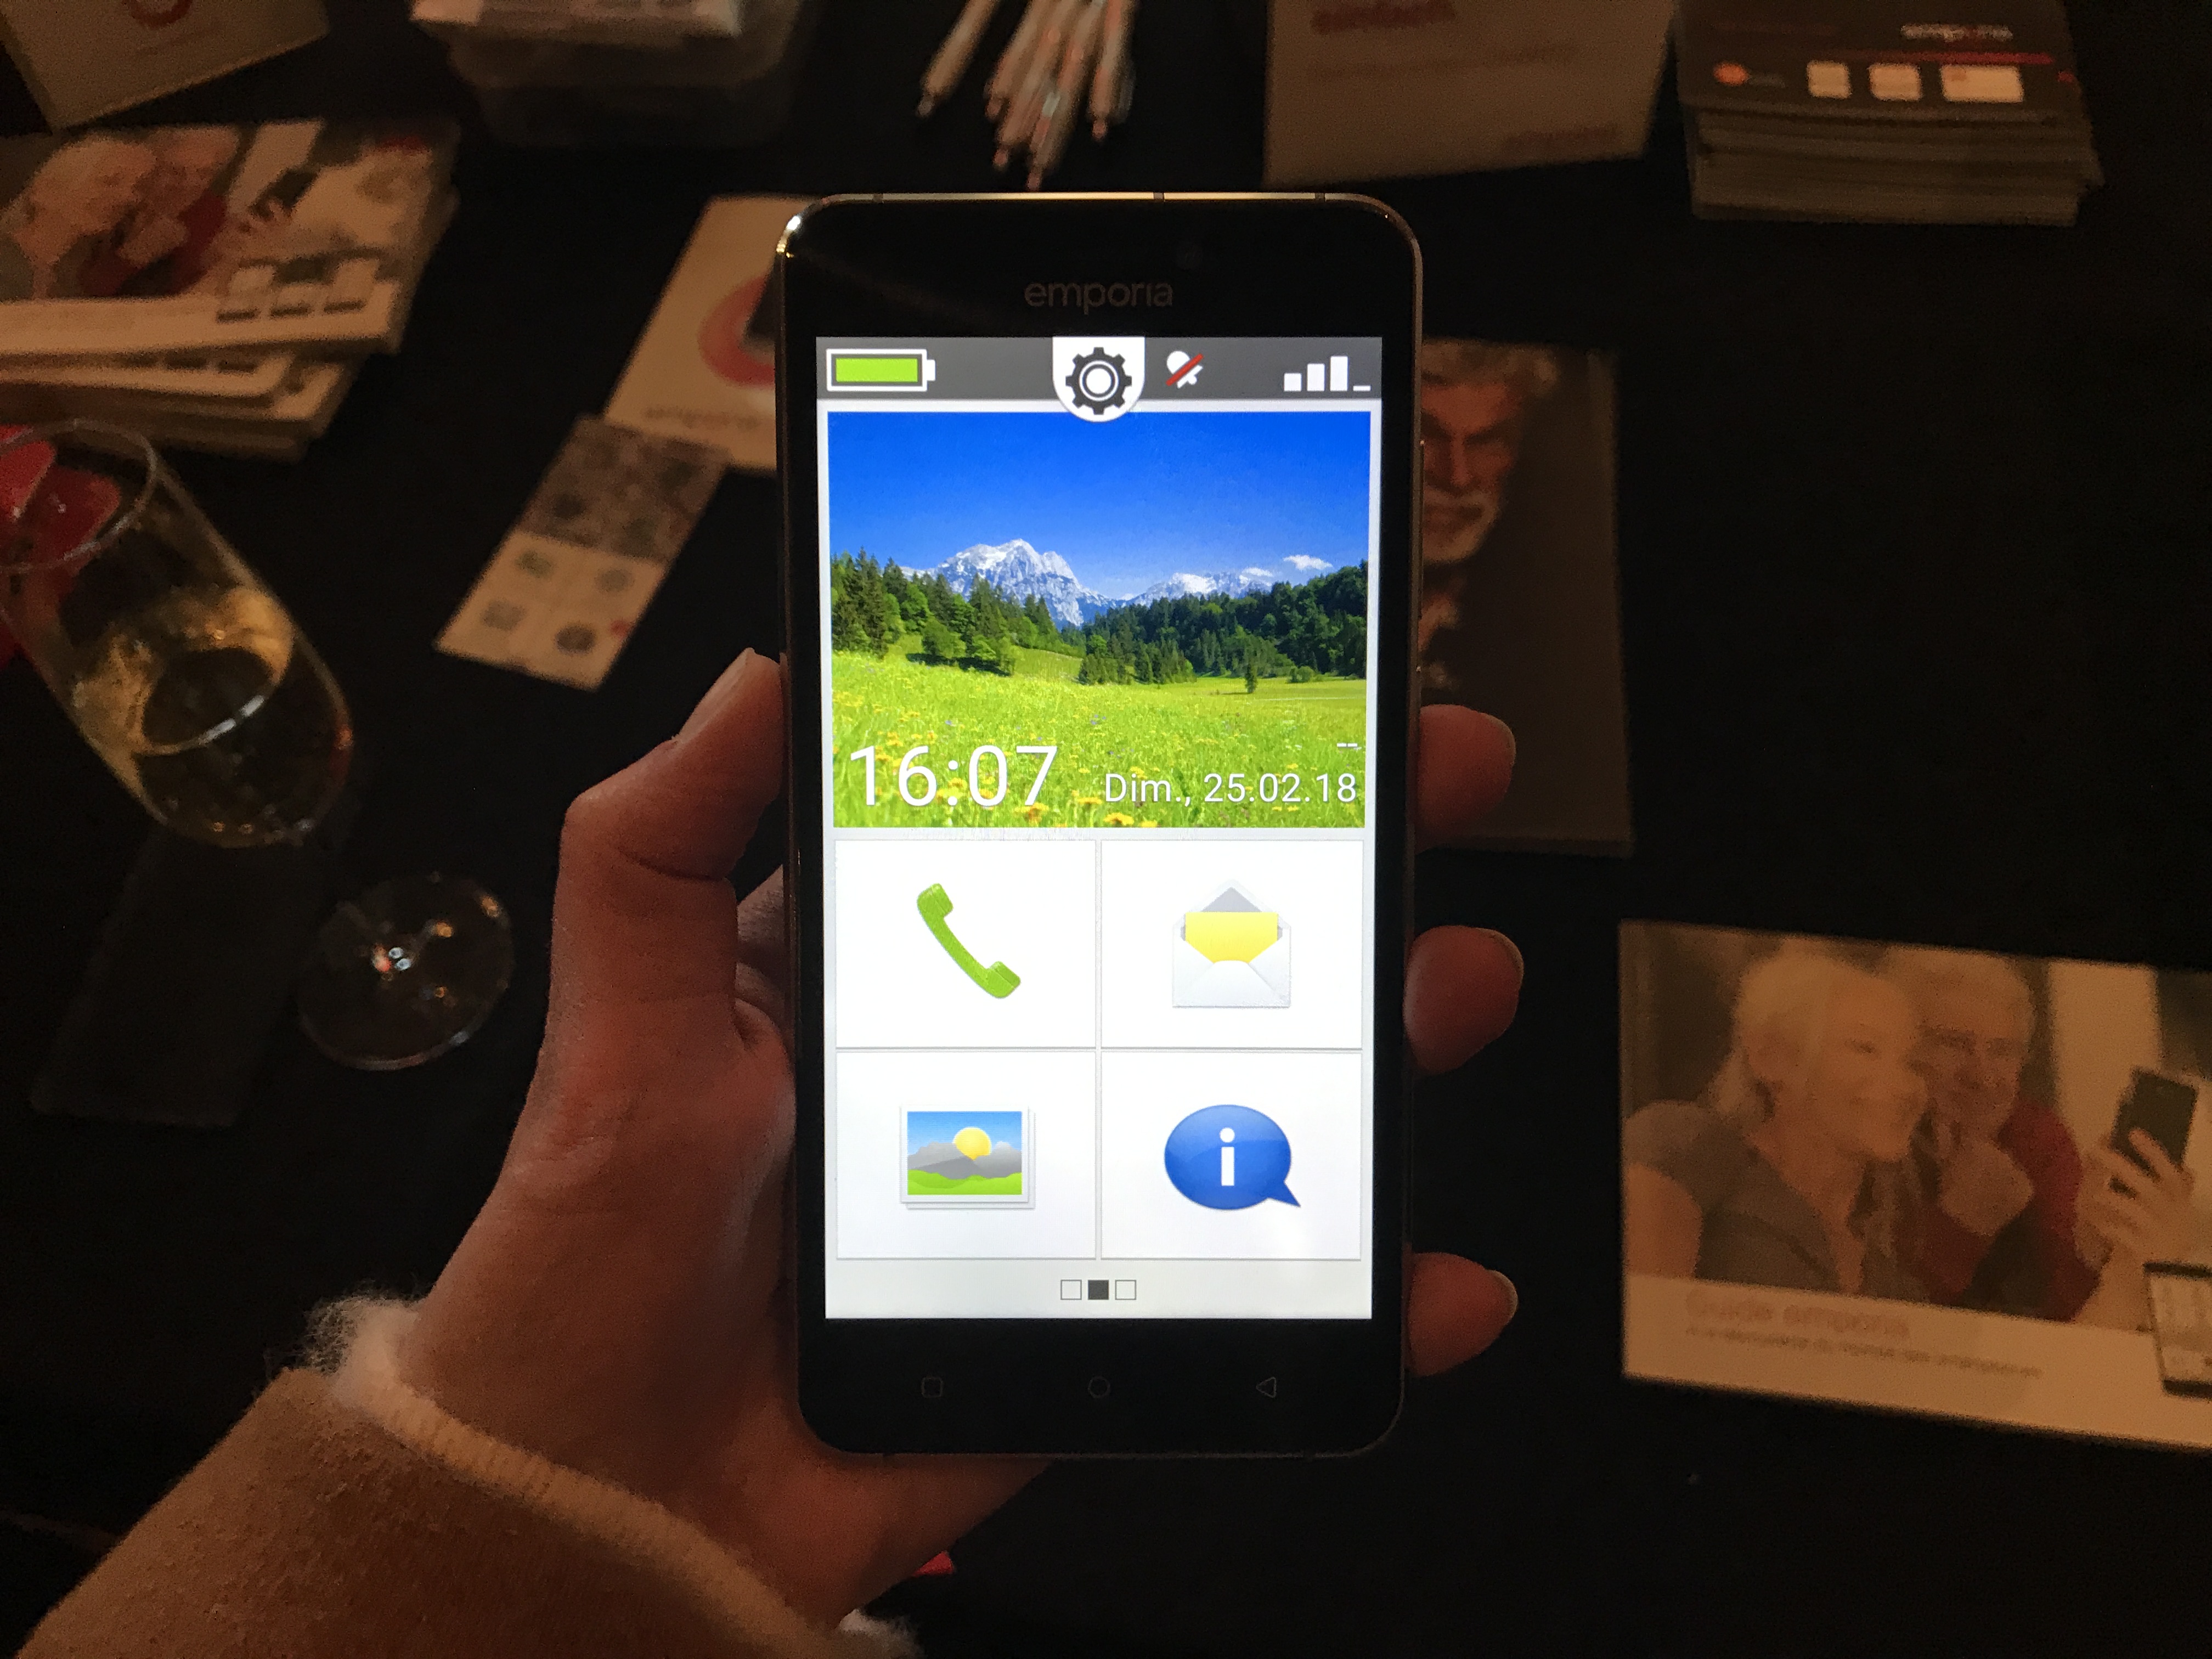 EmporiaCLICK : un nouveau téléphone portable pour seniors avec